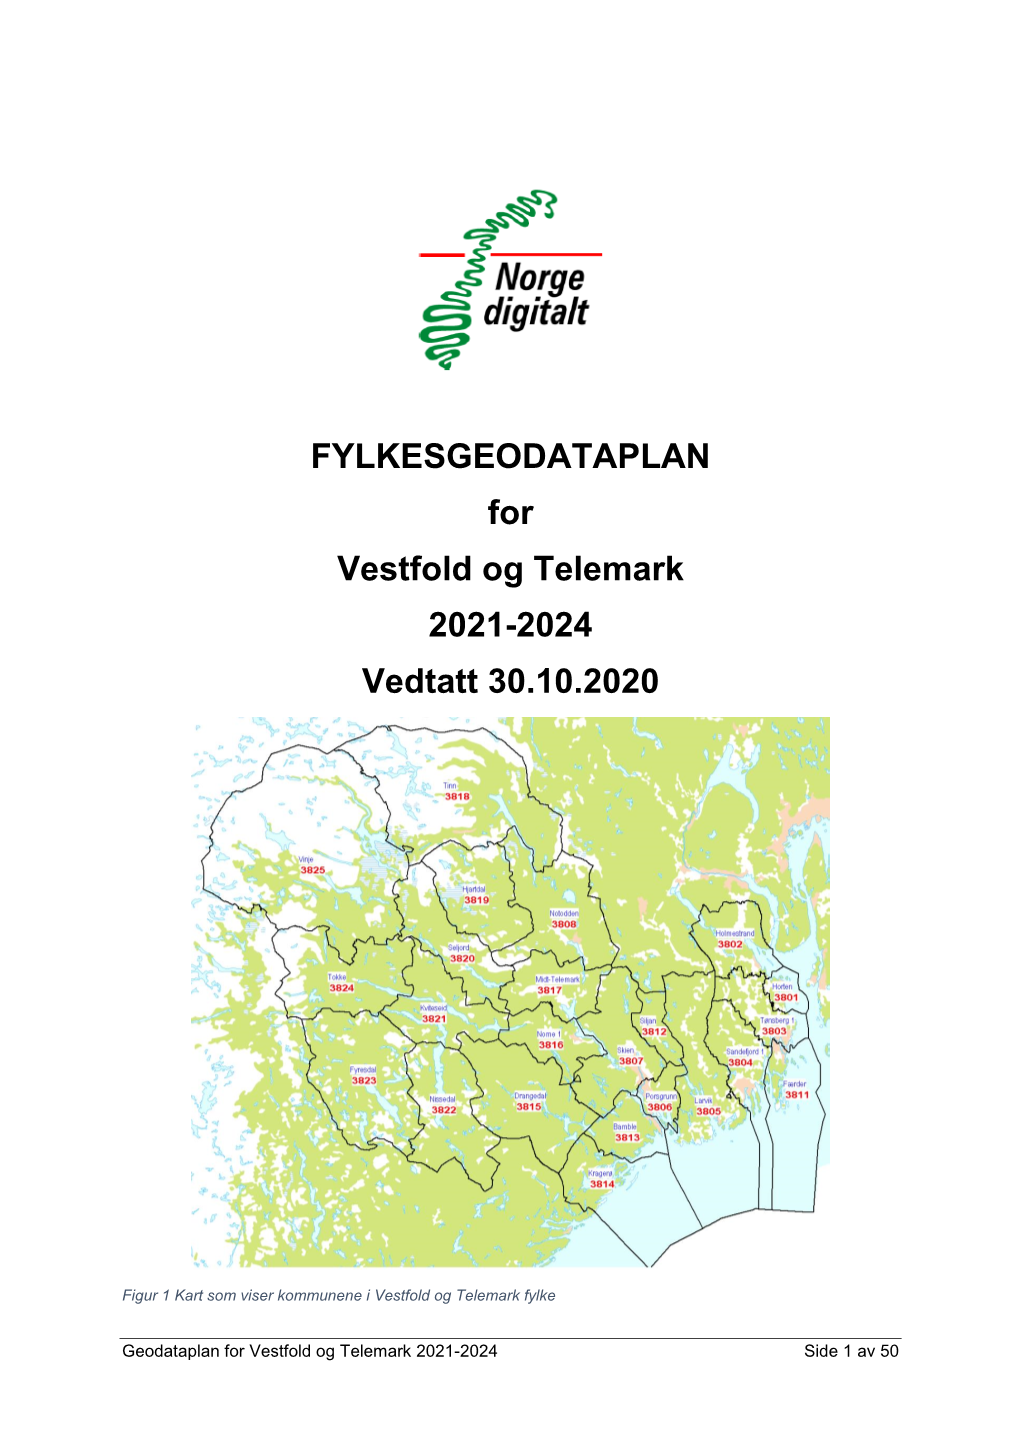 FYLKESGEODATAPLAN for Vestfold Og Telemark 2021-2024 Vedtatt 30.10.2020